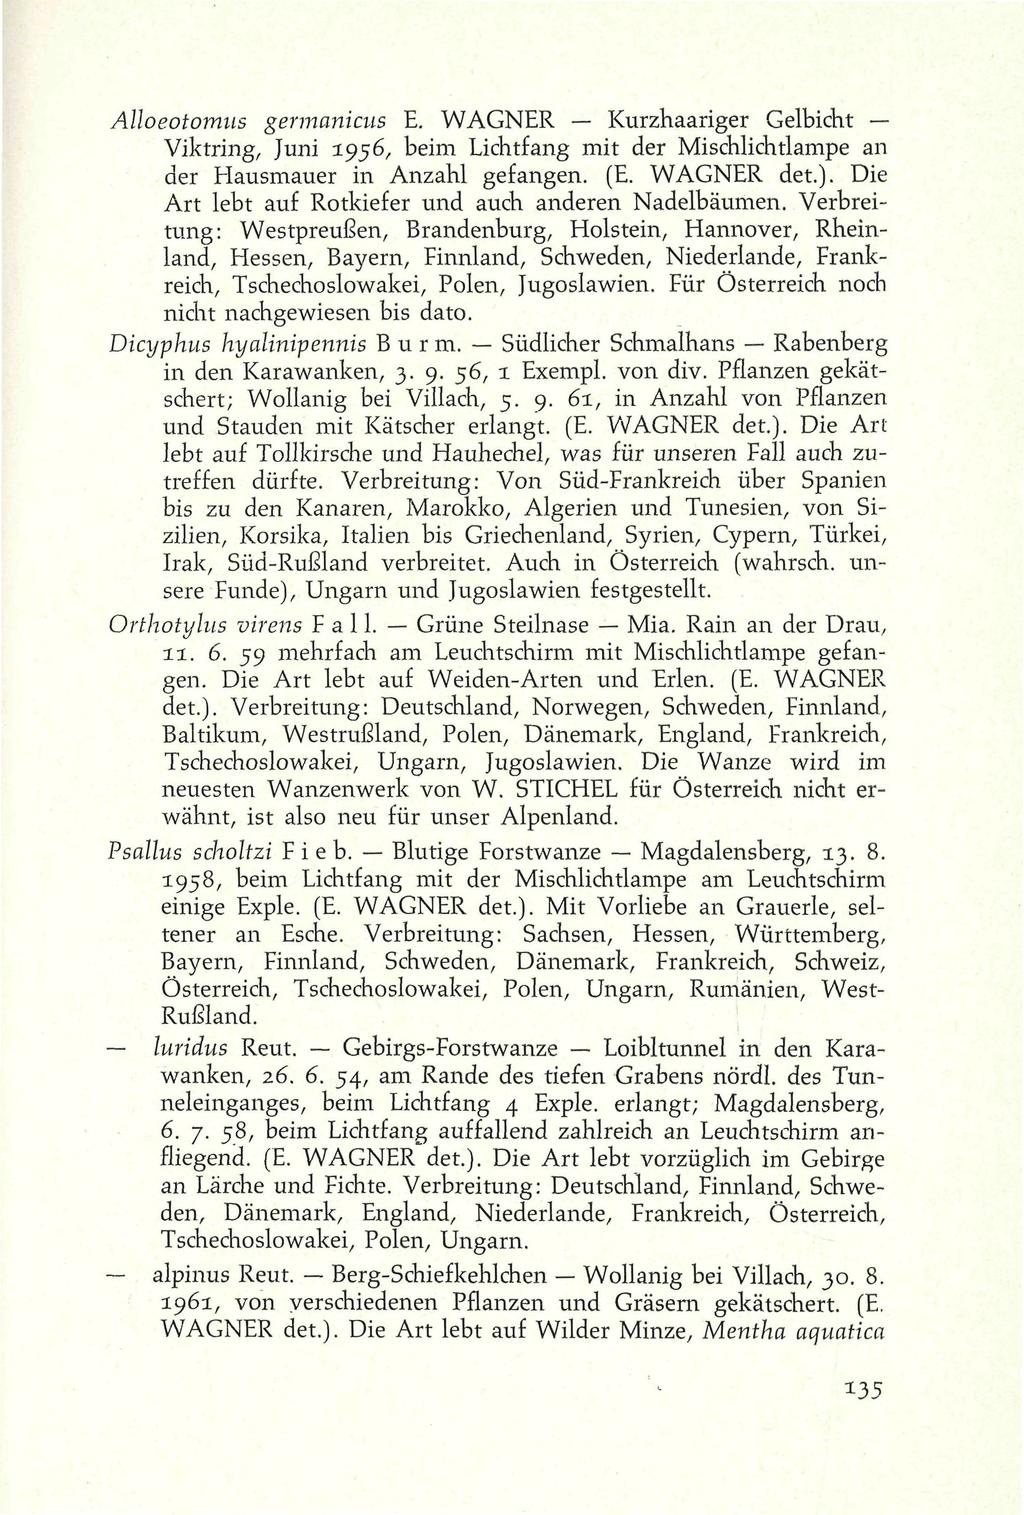 Alloeotomns germanicus E. WAGNER Kurzhaariger Gelbicht Viktring, Juni 1956, beim Lichtfang mit der Mischlichtlampe an der Hausmauer in Anzahl gefangen. (E. WAGNER det.).